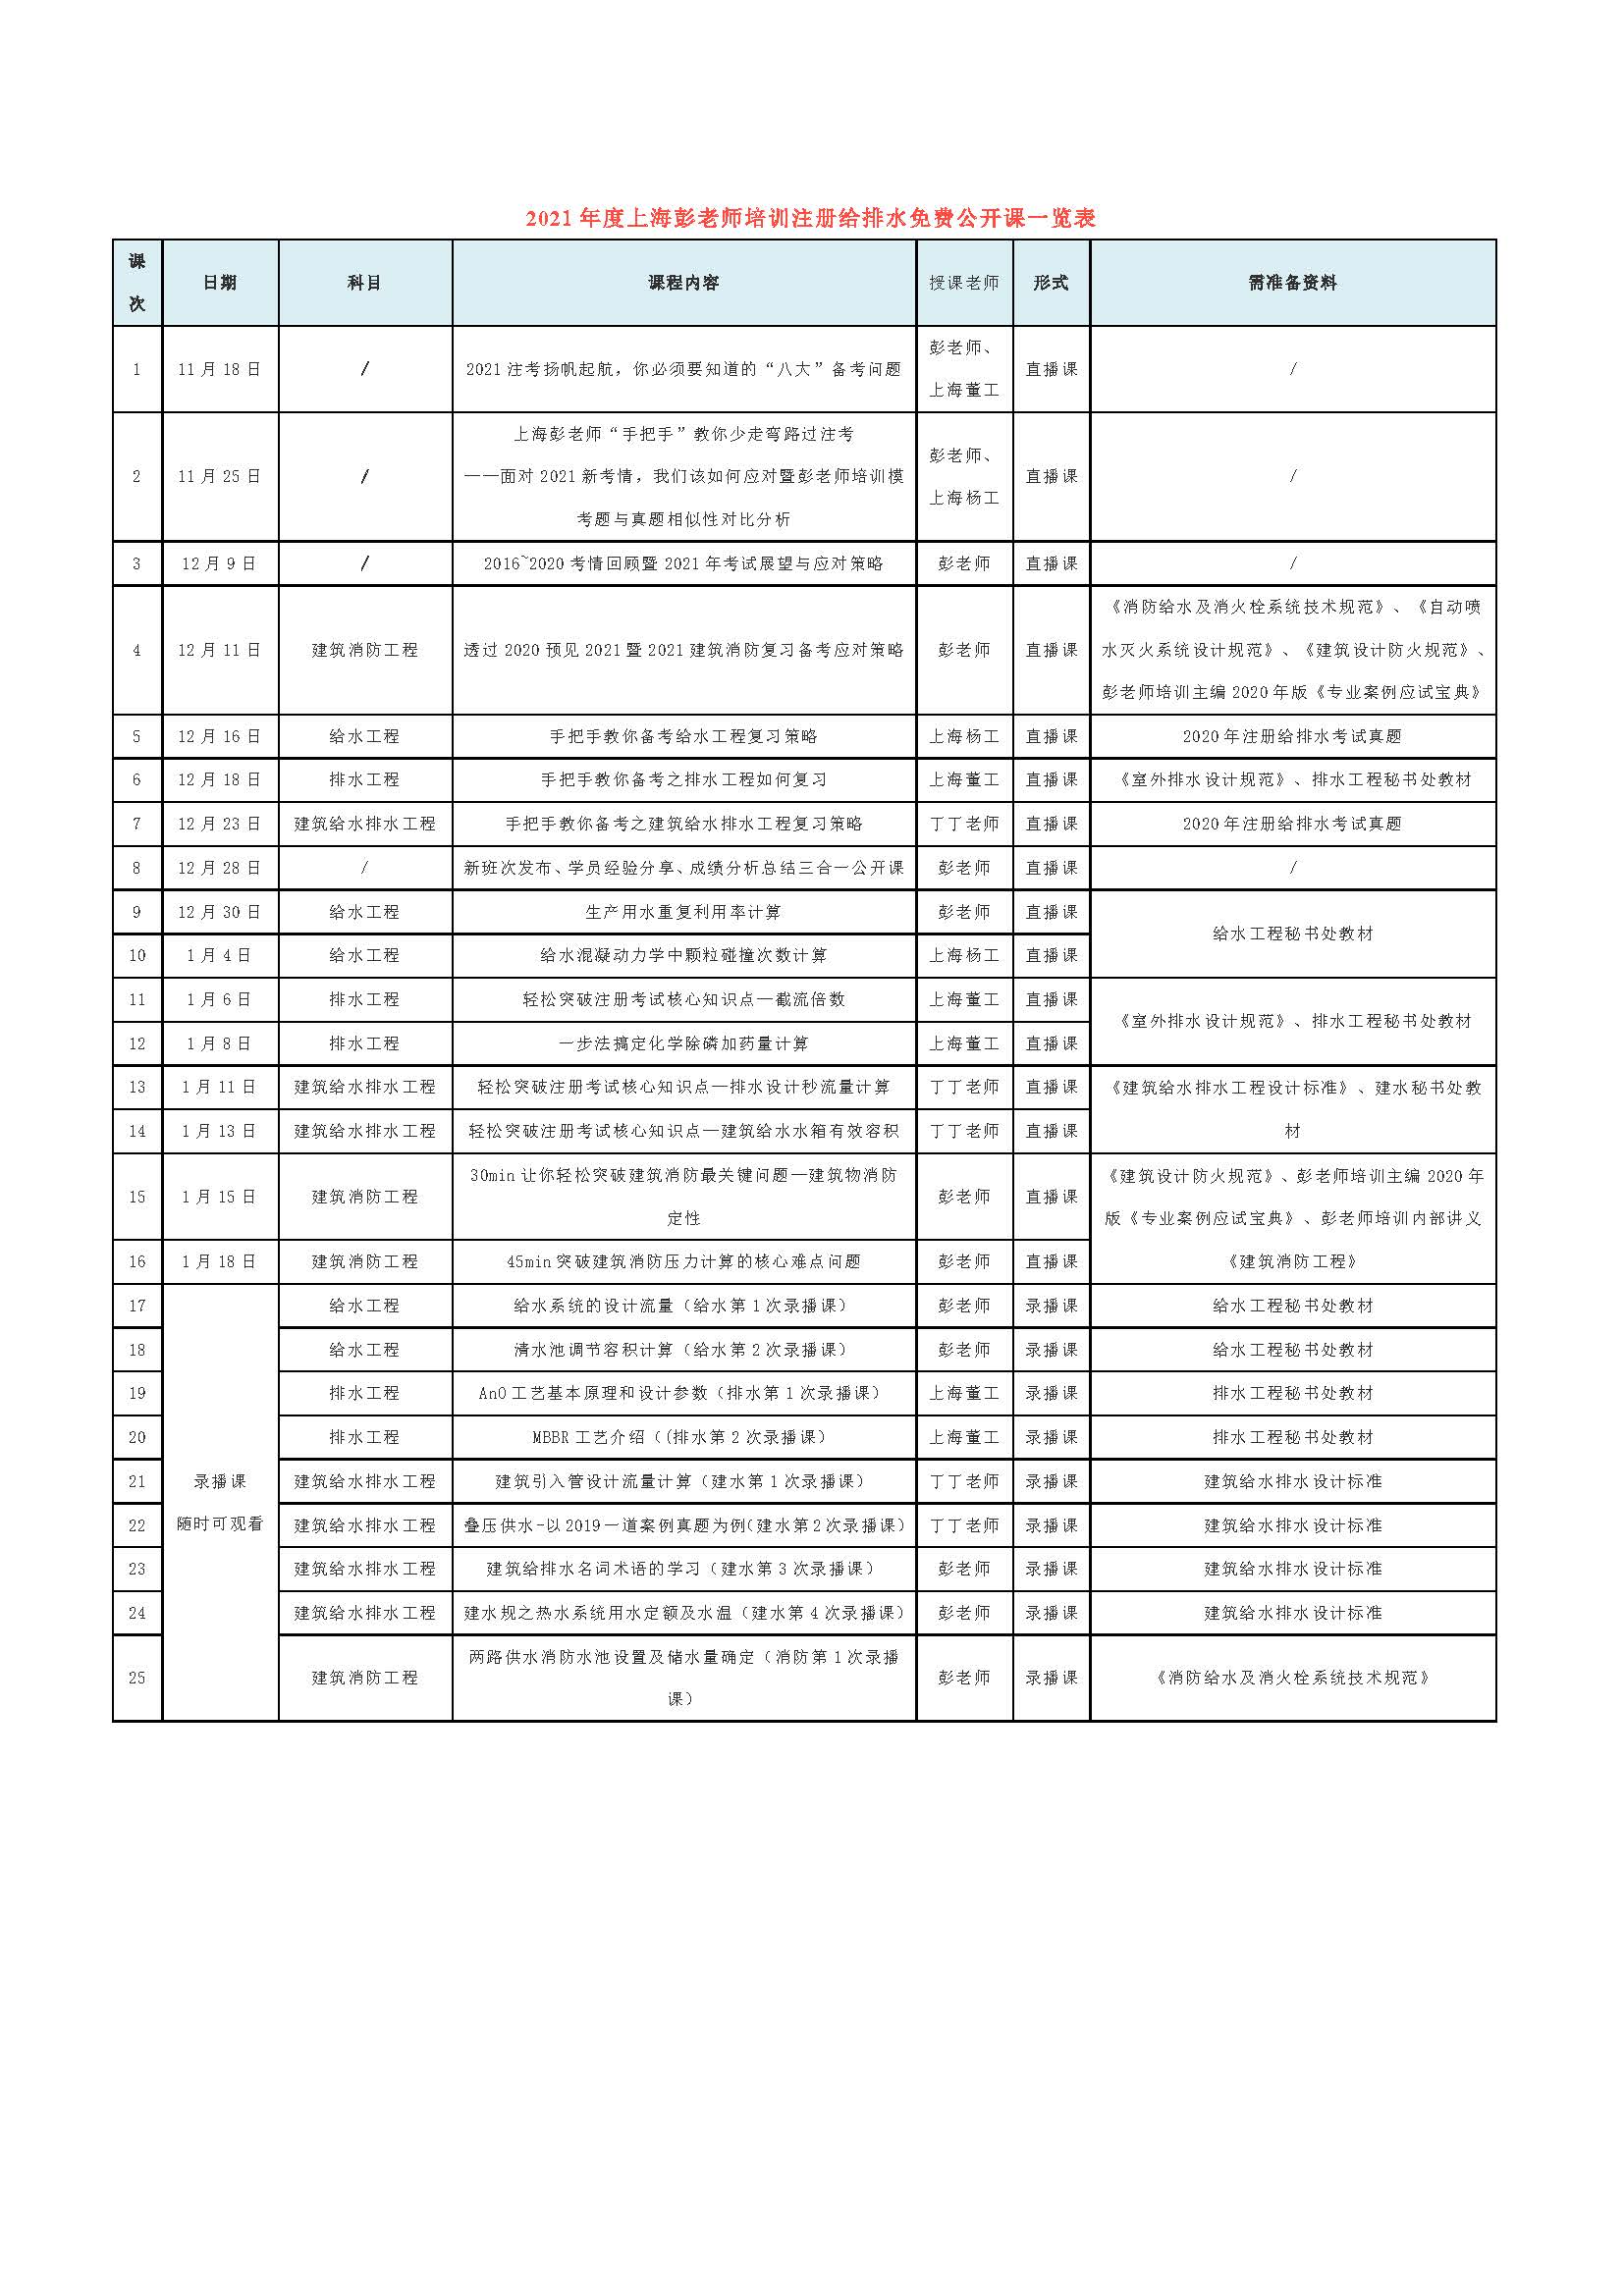 2021年度上海彭老师培训注册给排水免费公开课一览表.jpg